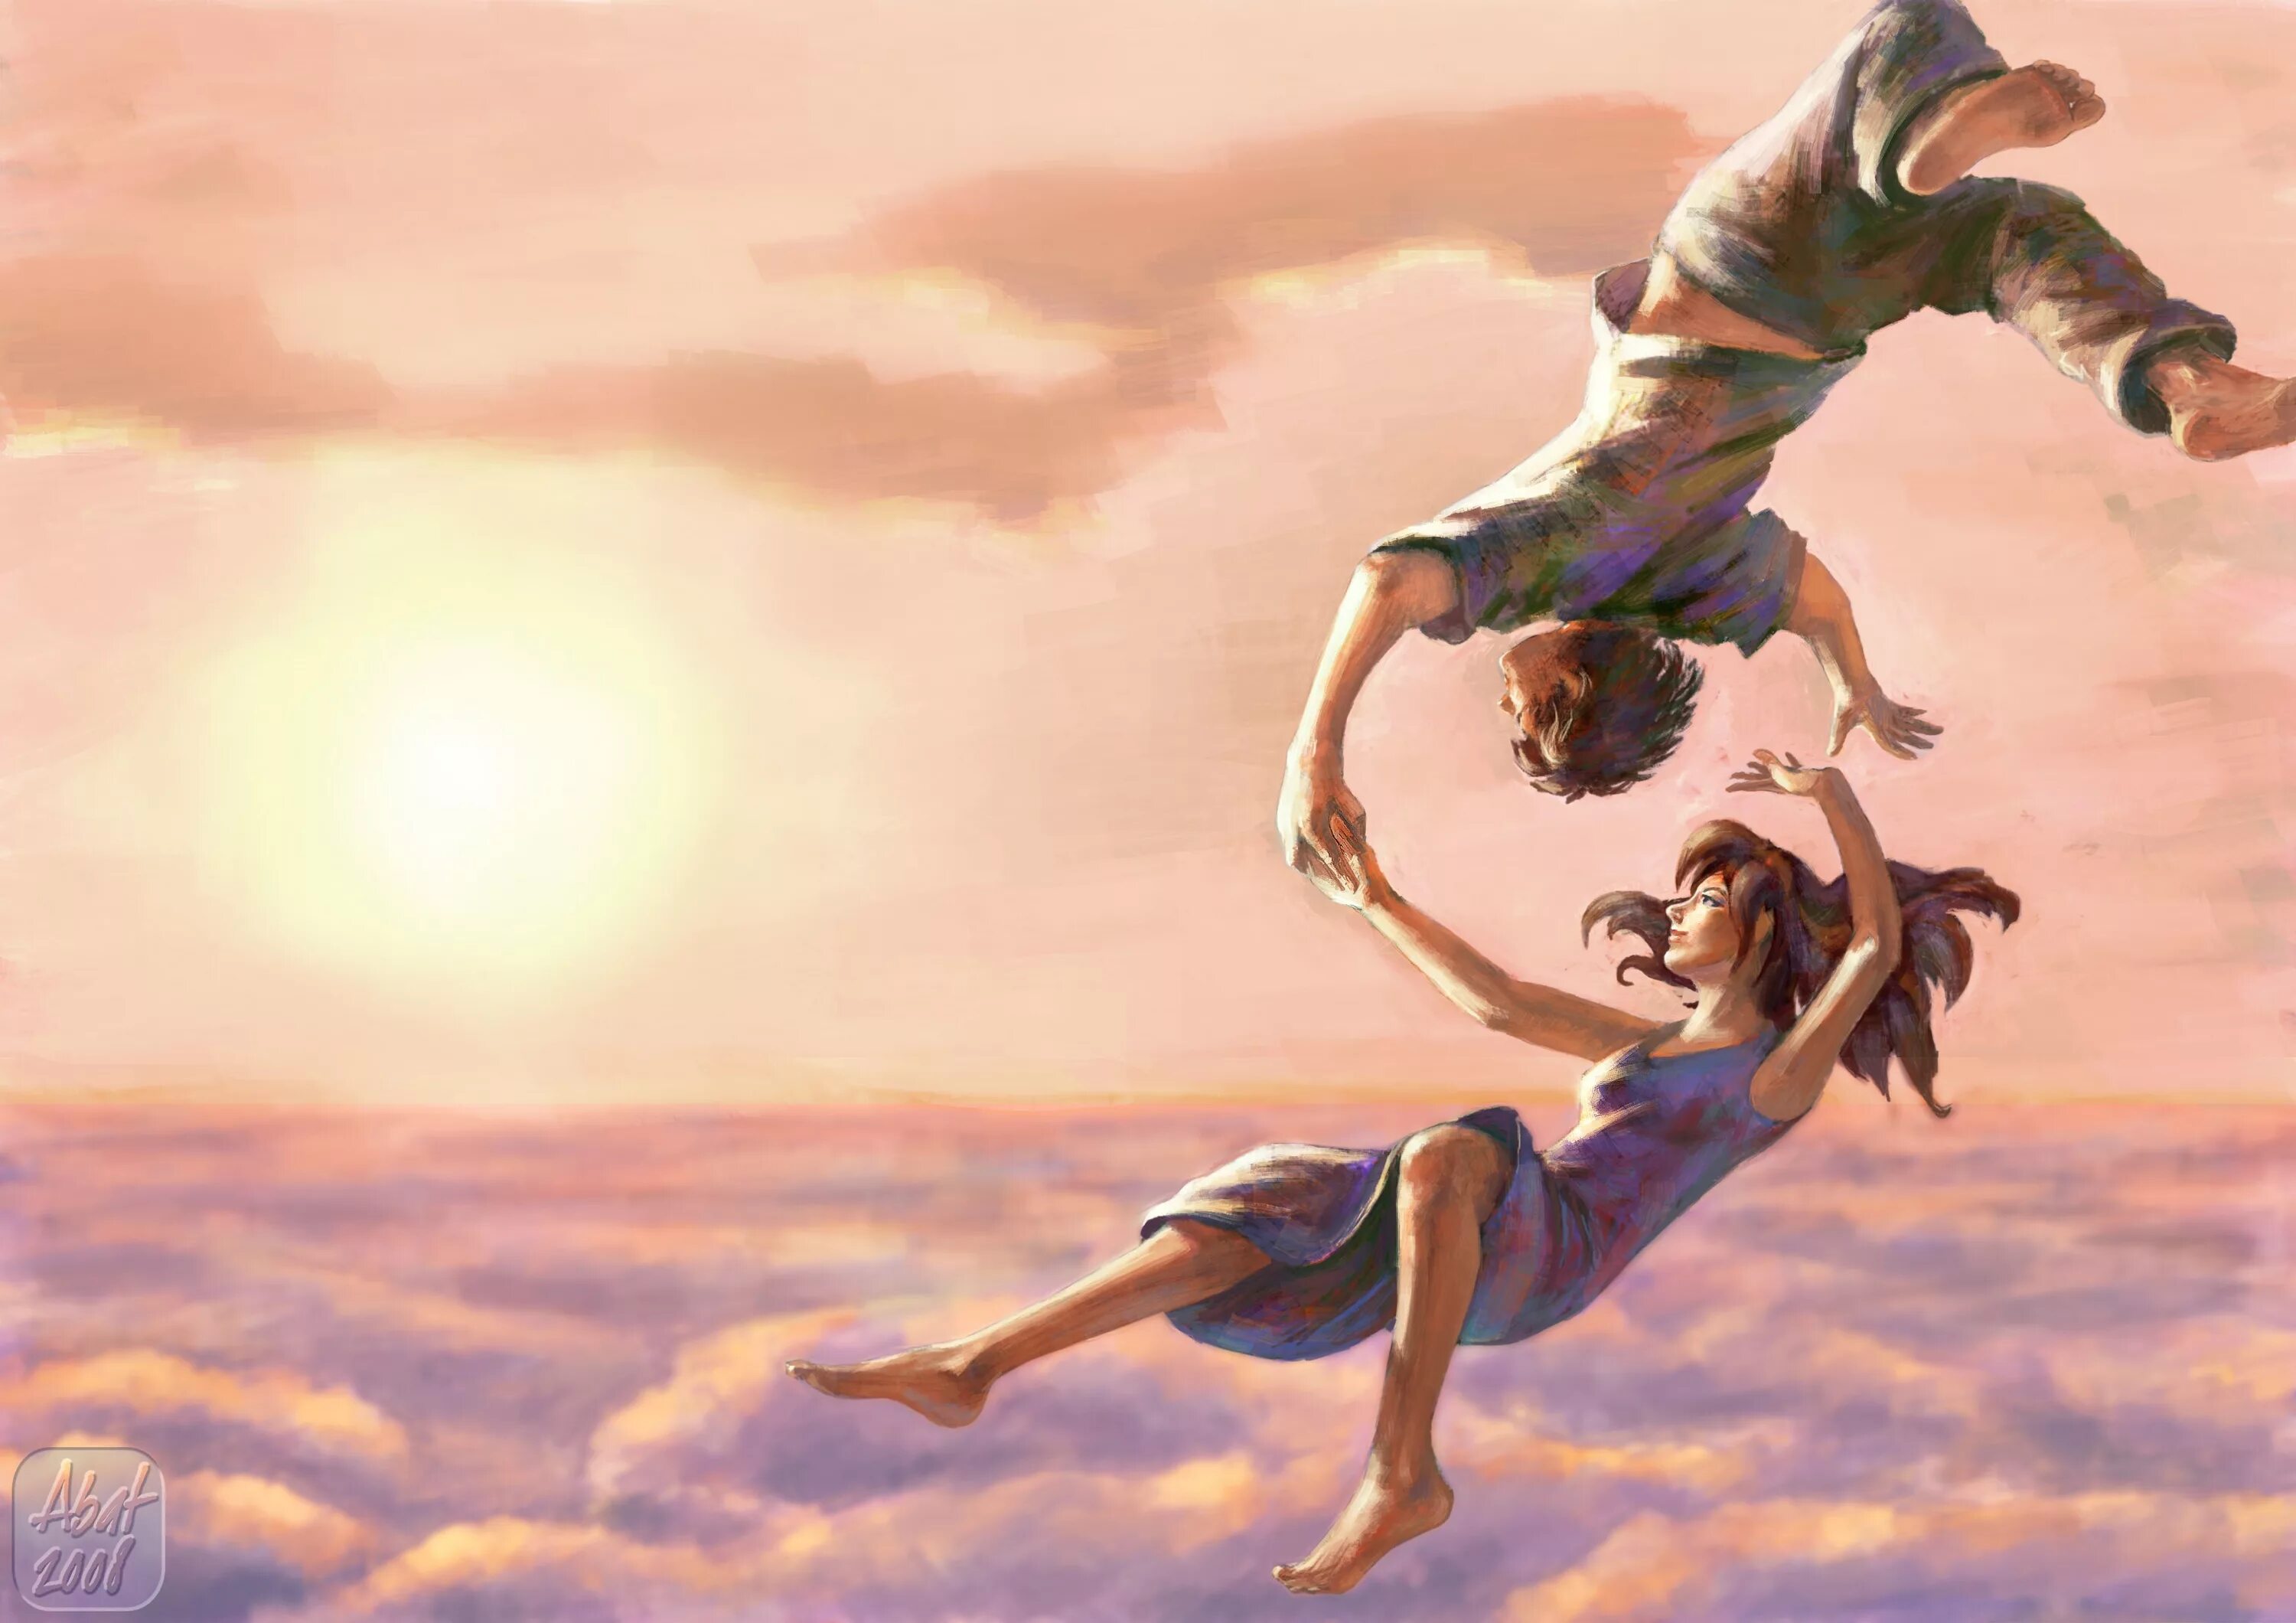 Зачем люди летают. Девушка в прыжке. Картина счастье. Красивые иллюстрации. Полет души.